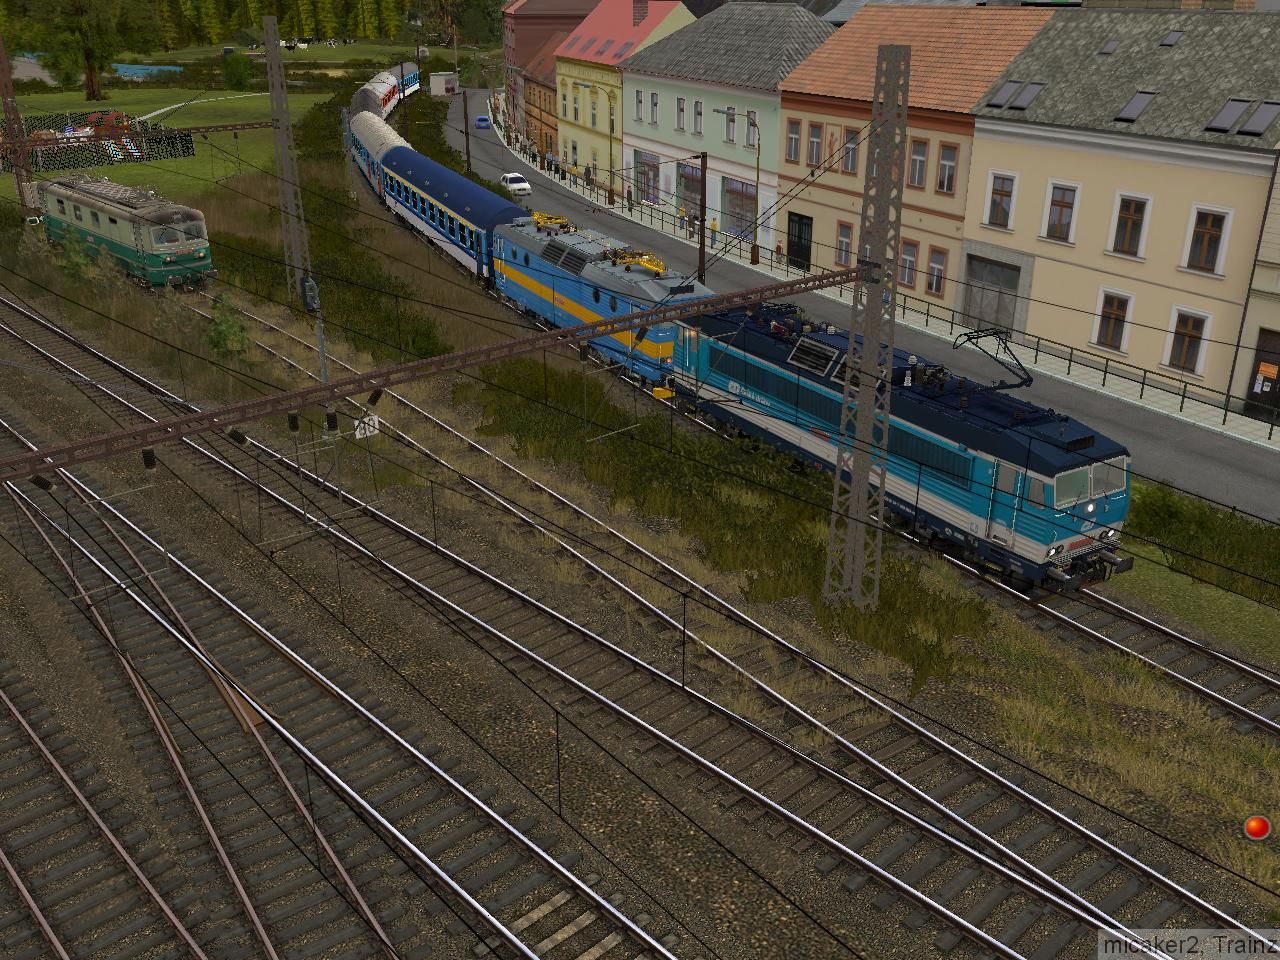 Tři mašiny a jeden vlak :)